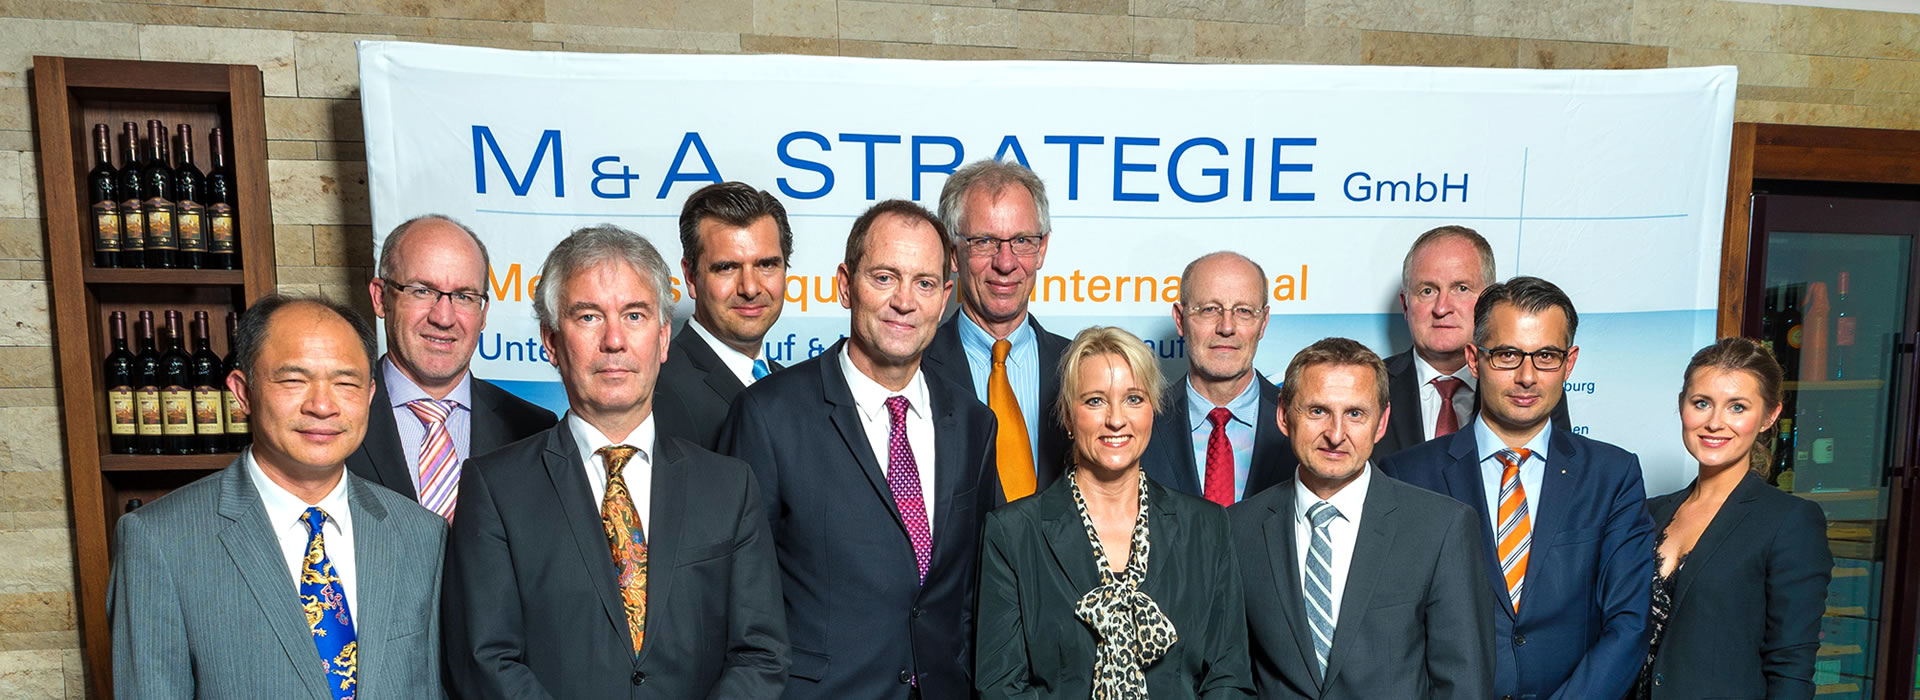 Das Team der M & A STRATEGIE GmbH